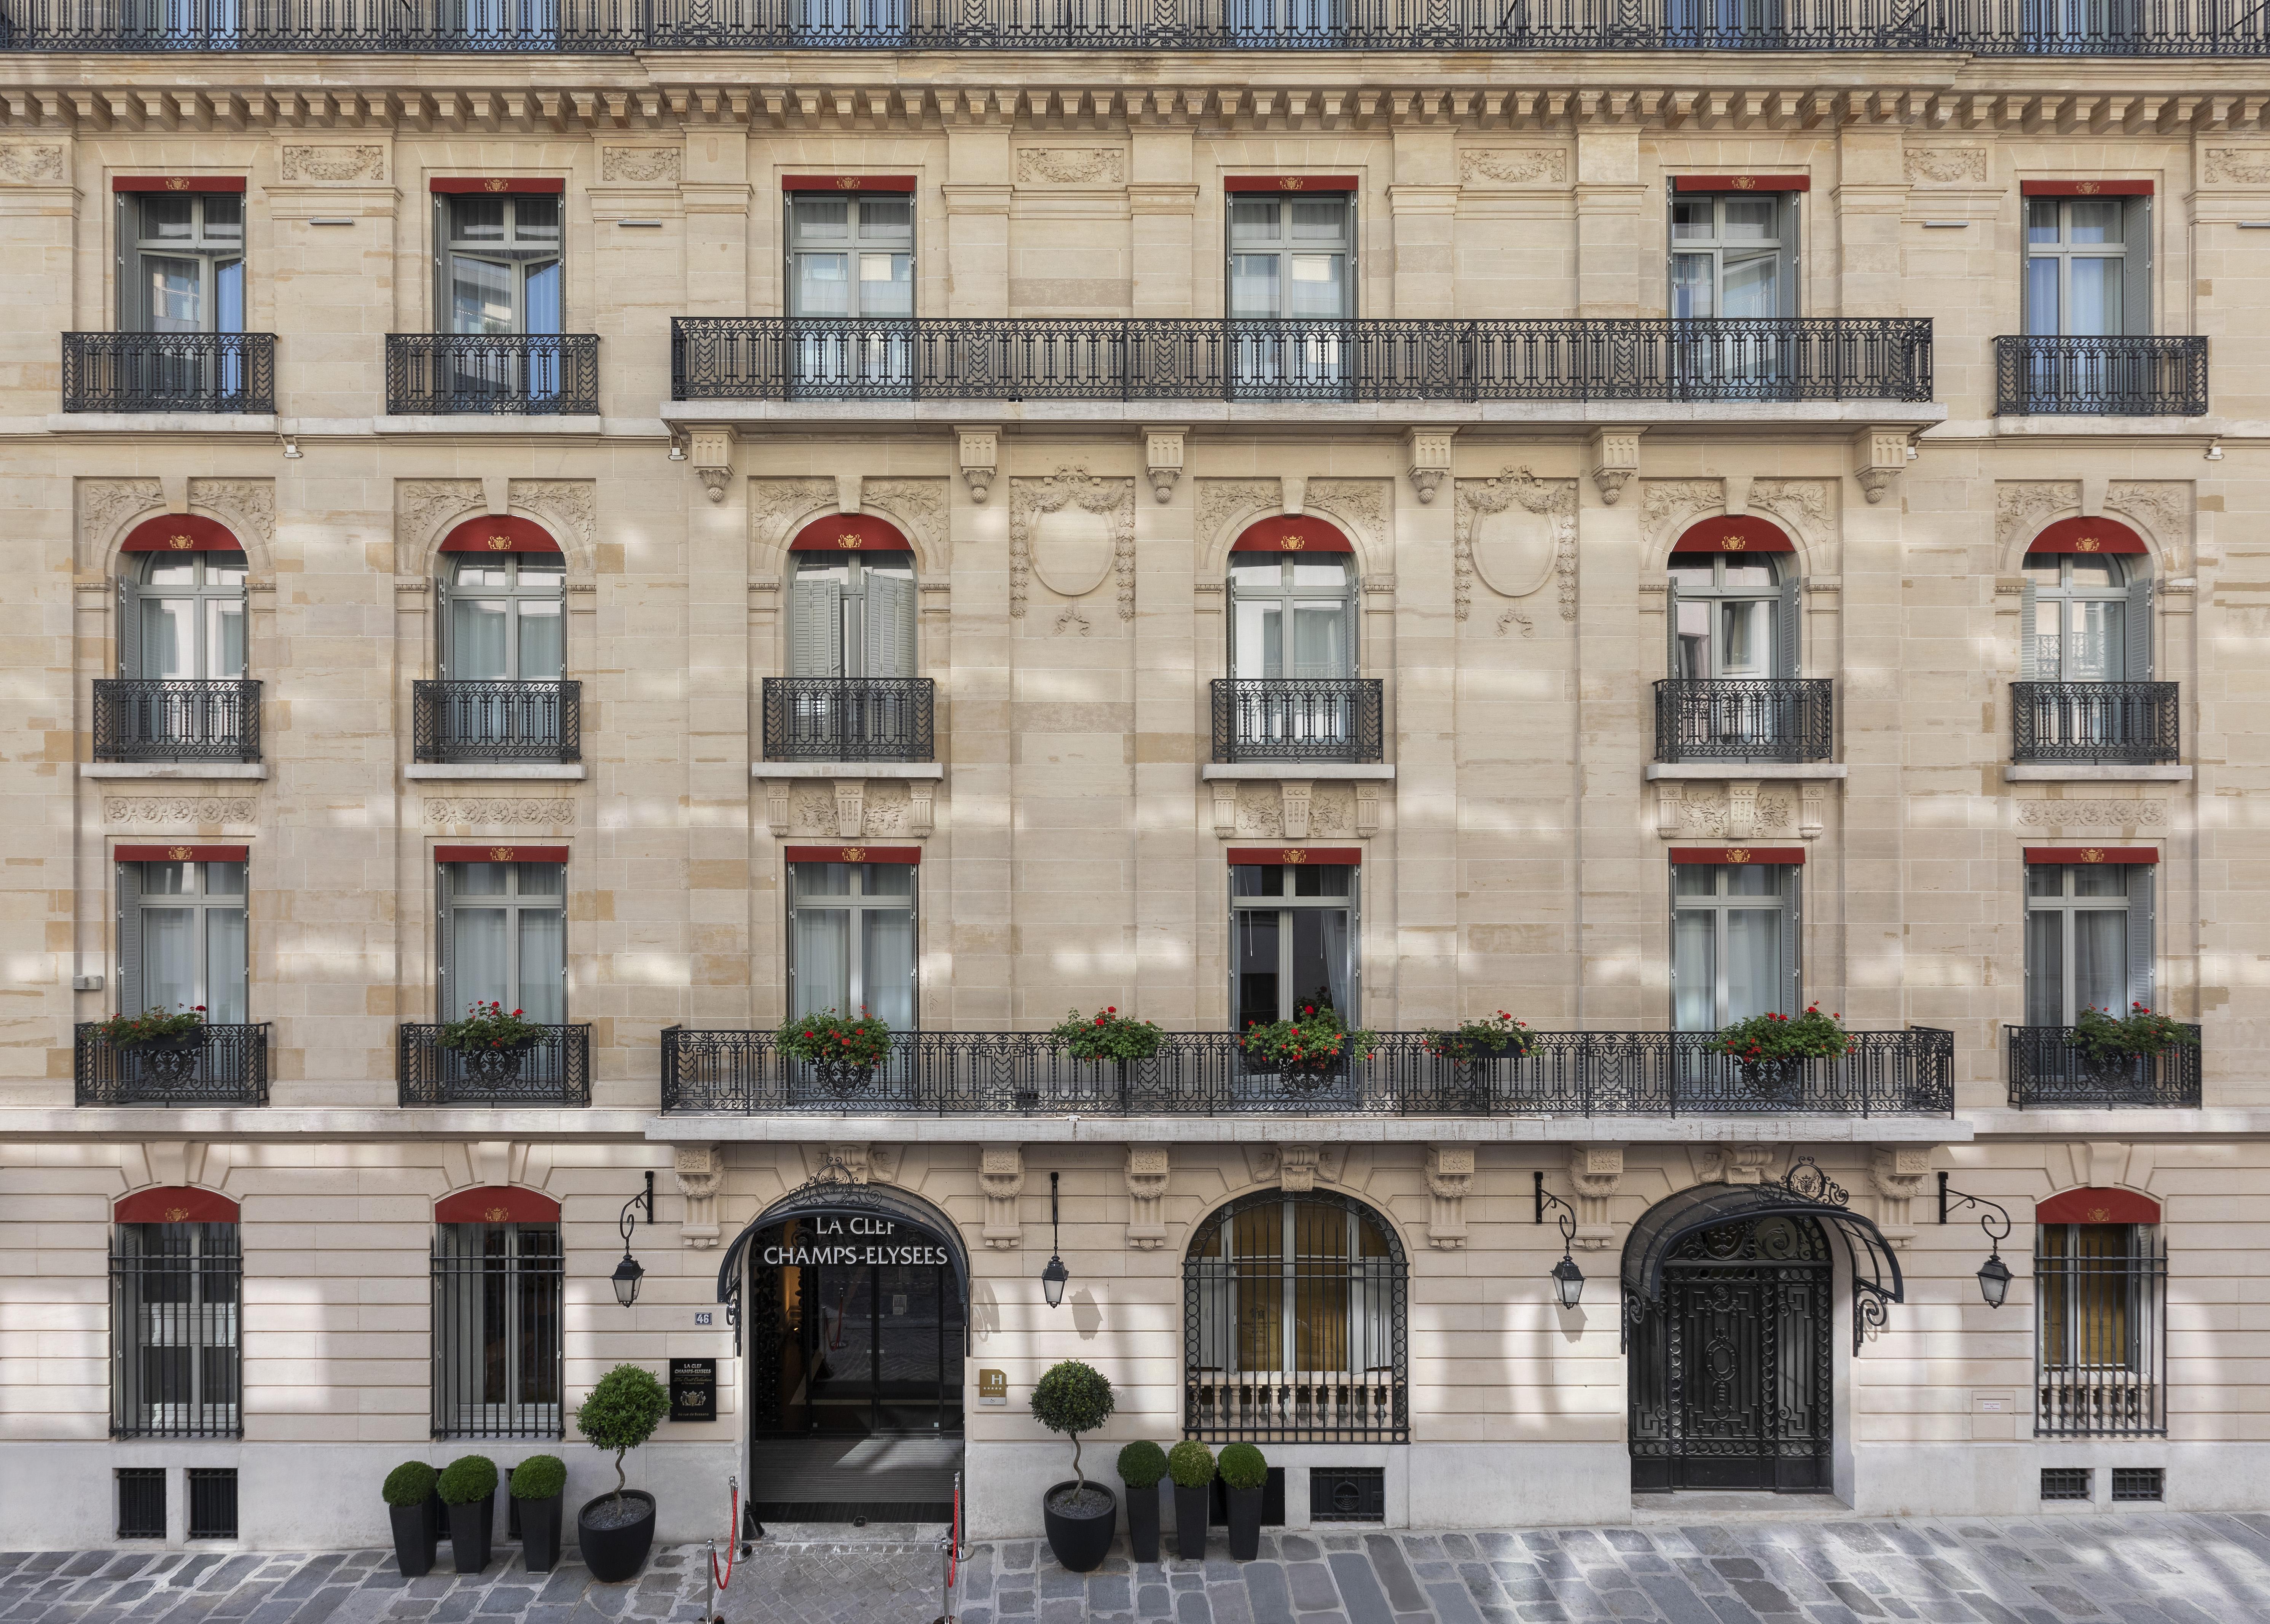 Louis Vuitton 101 Avenue Des Champs Elysees Parish La